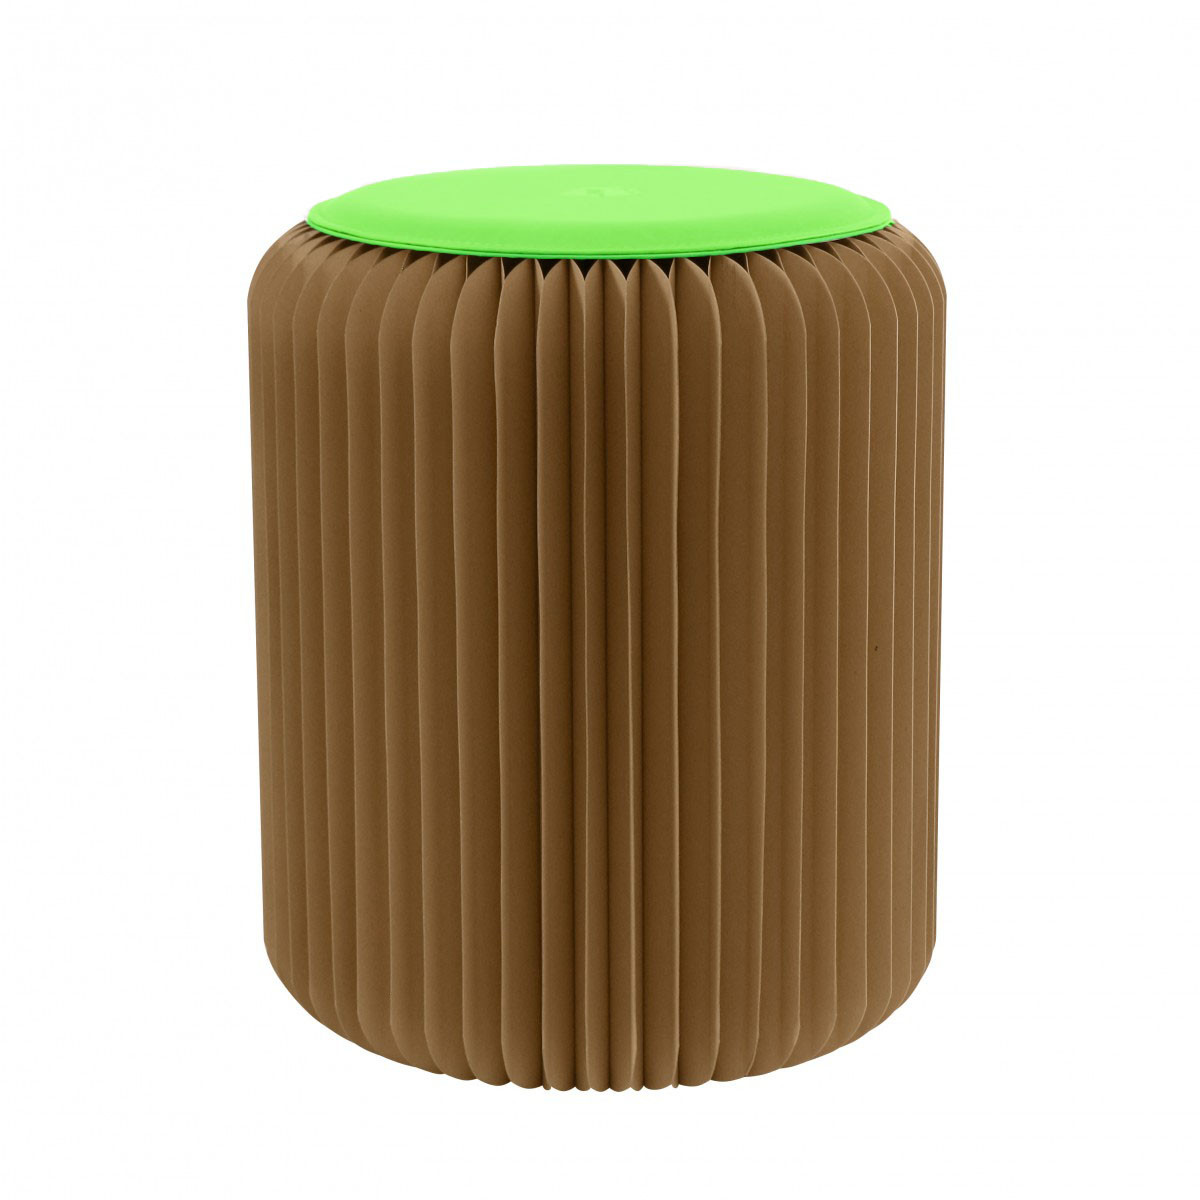 Tabouret pliable marron avec assise vert prairie